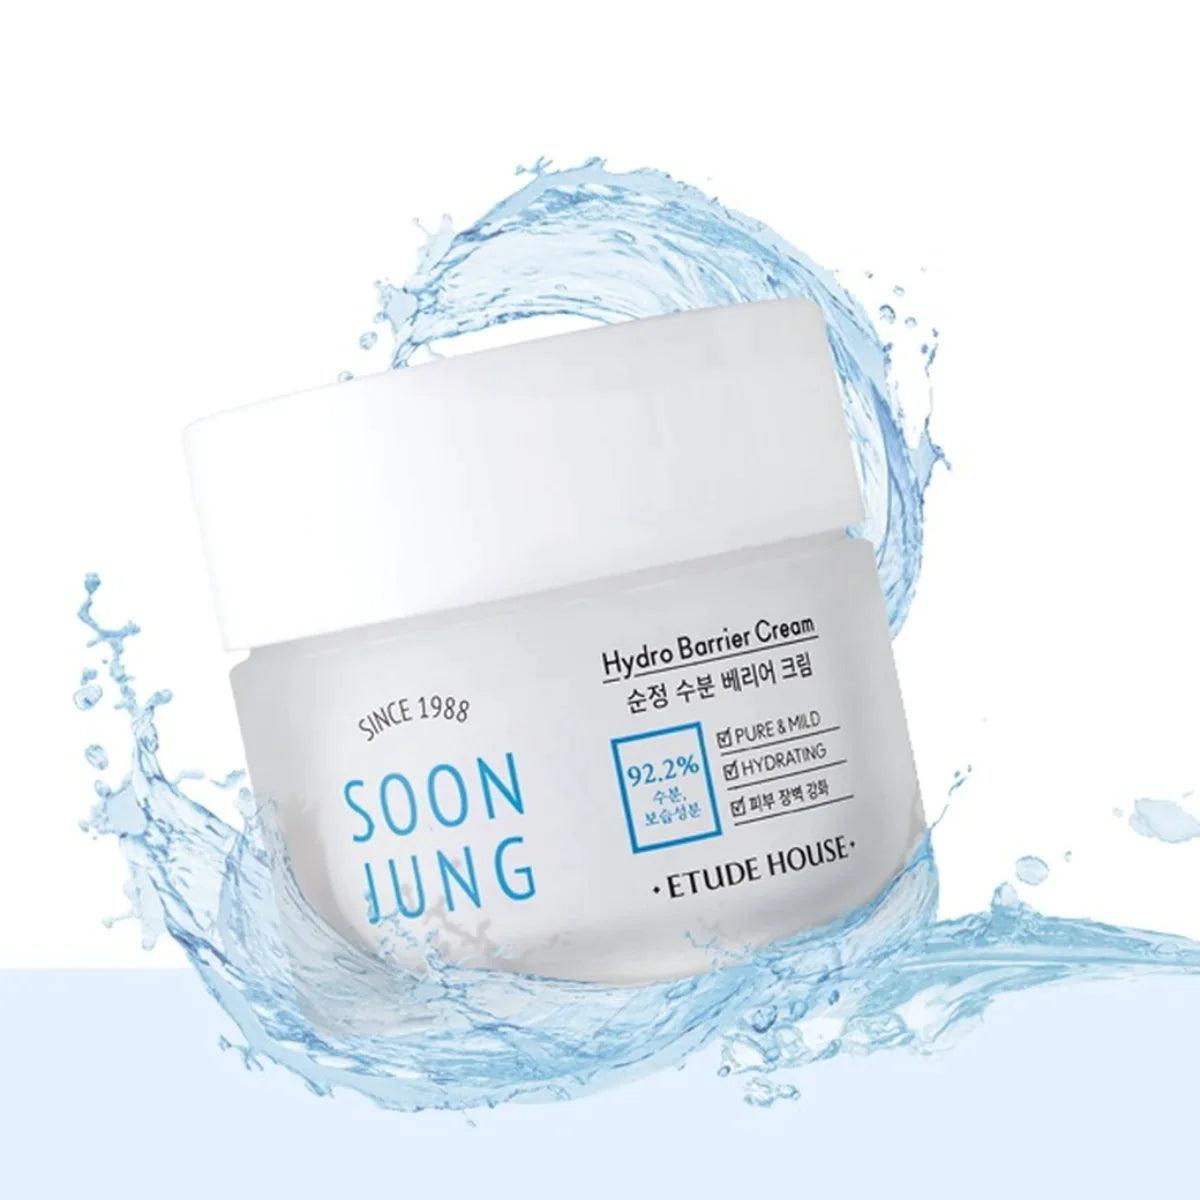 Soon Jung Hydro Barrier Cream - 75 ml - K-Beauty Arabia